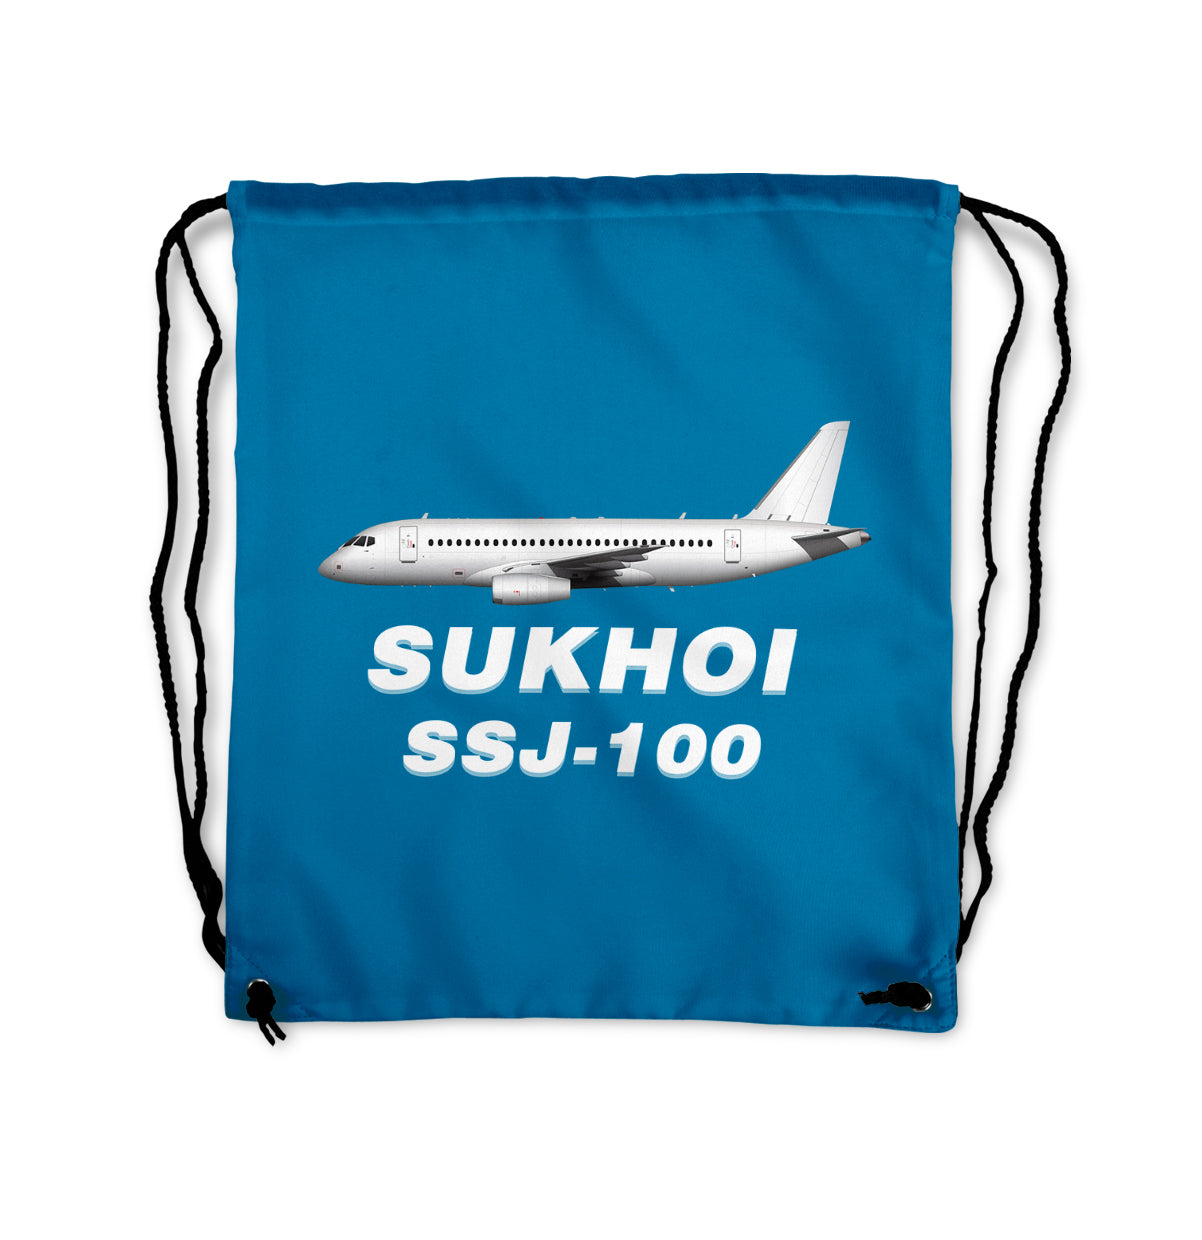 Sukhoi Superjet 100 Designed Drawstring Bags